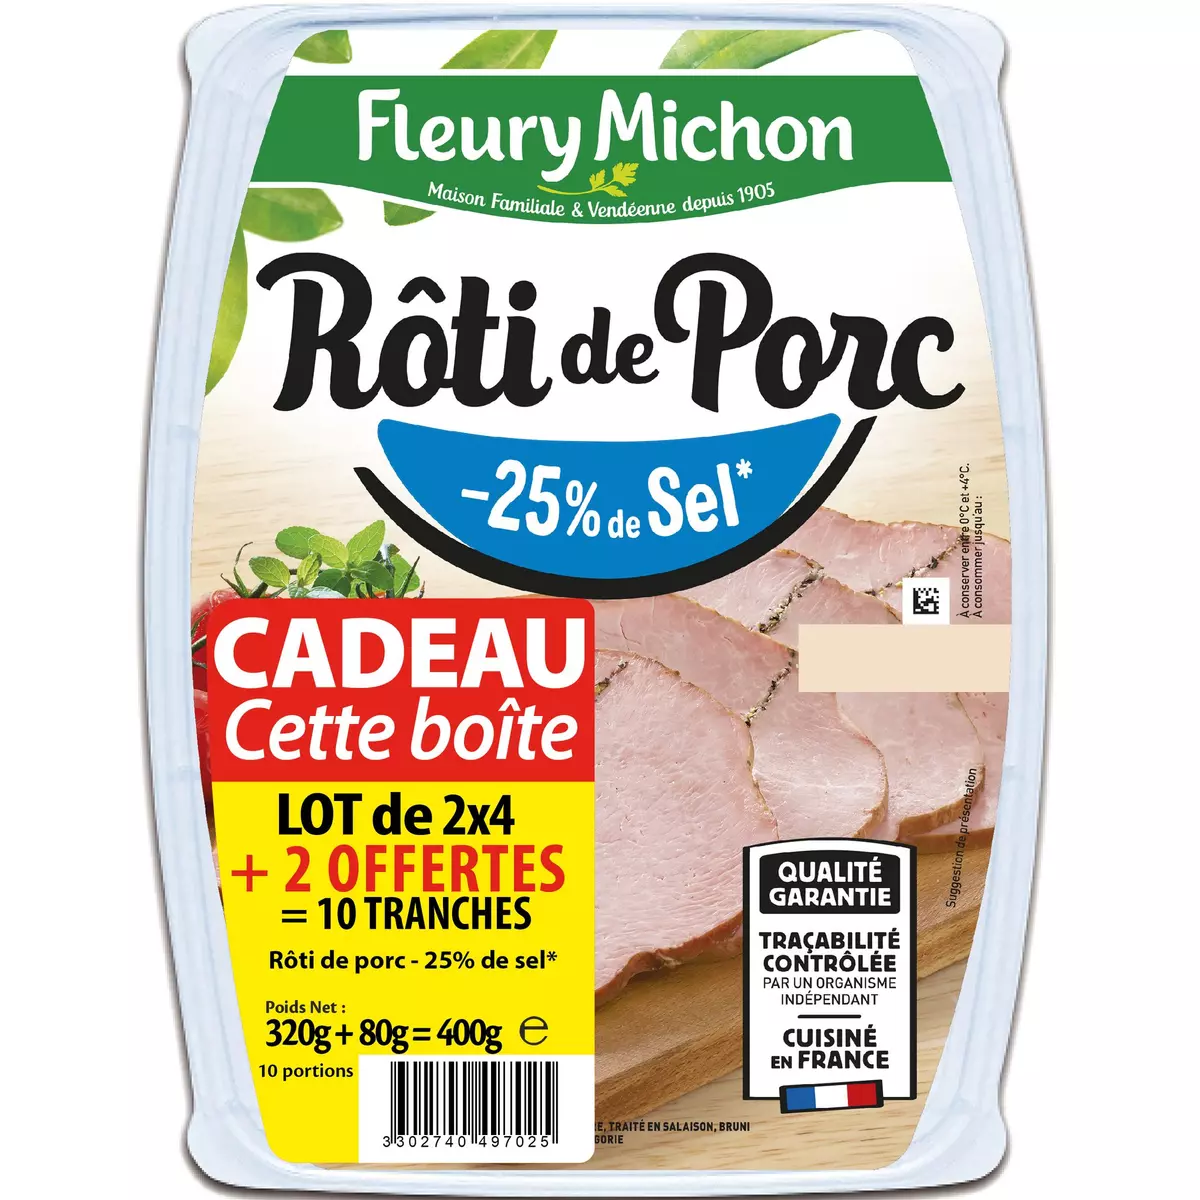 FLEURY MICHON Rôti de porc - 25% de sel avec boîte fraîcheur offerte  2x4 tranches+2 offertes 400g